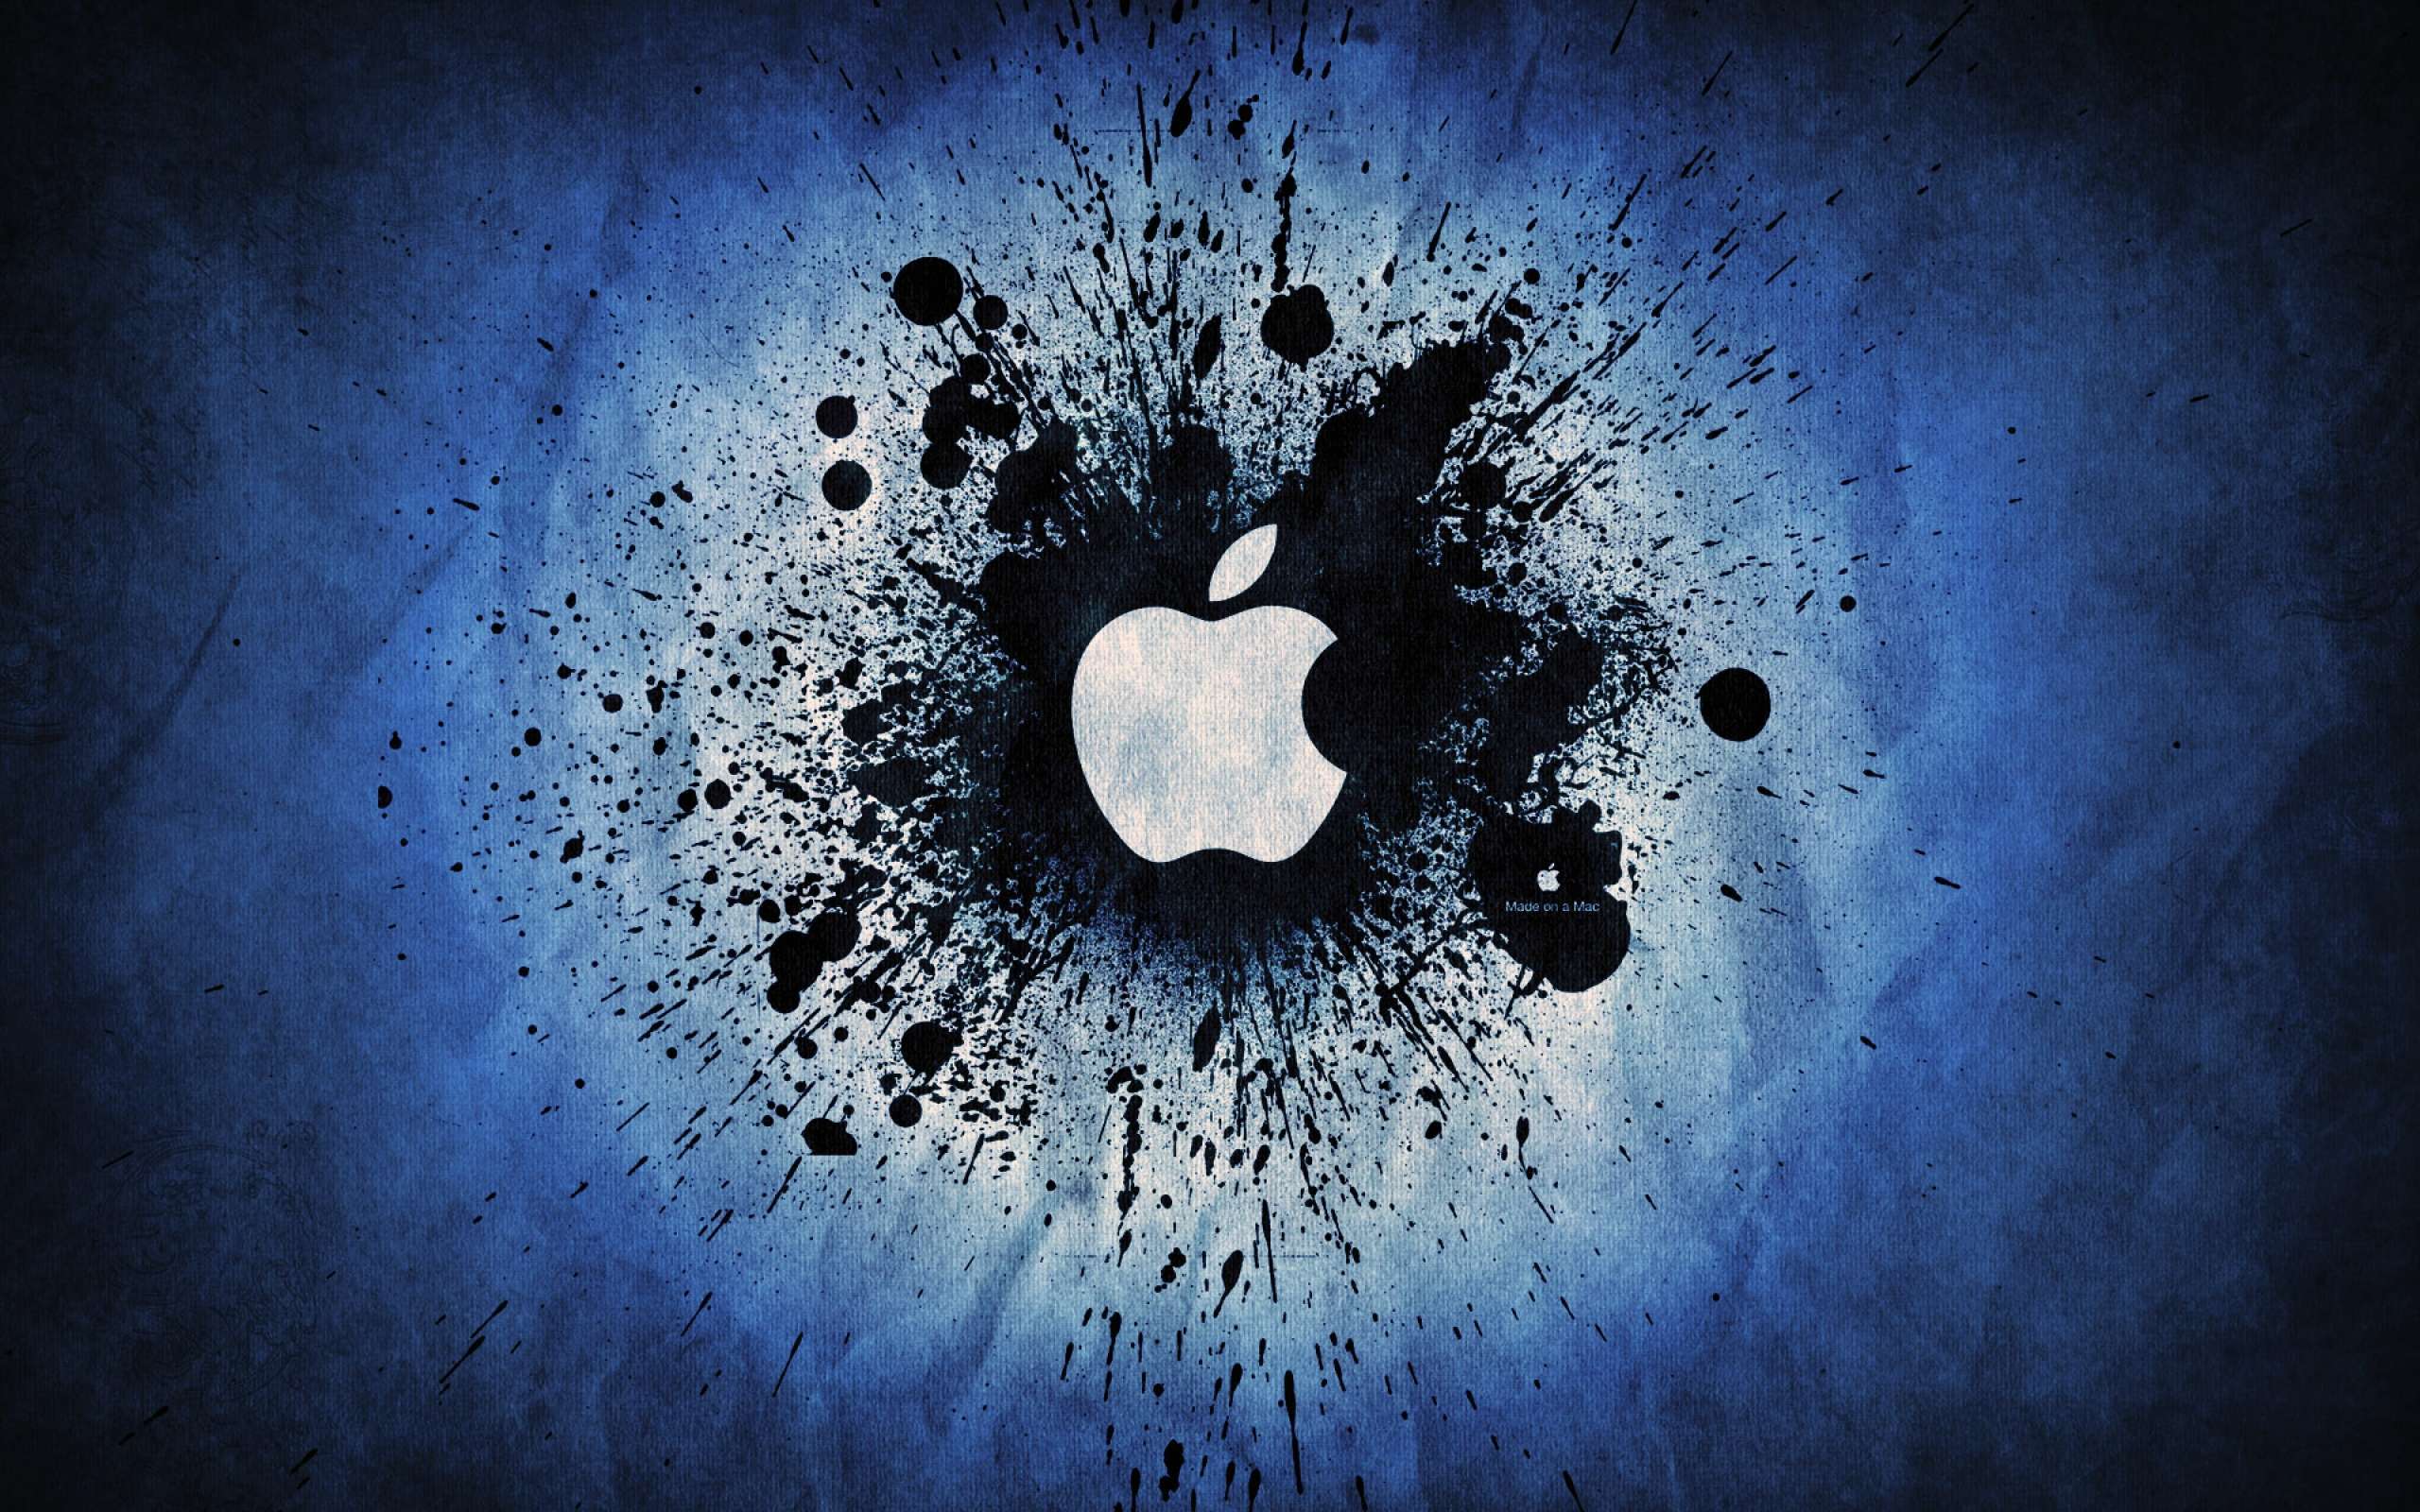 Fonds d&Apple : tous les wallpapers Apple